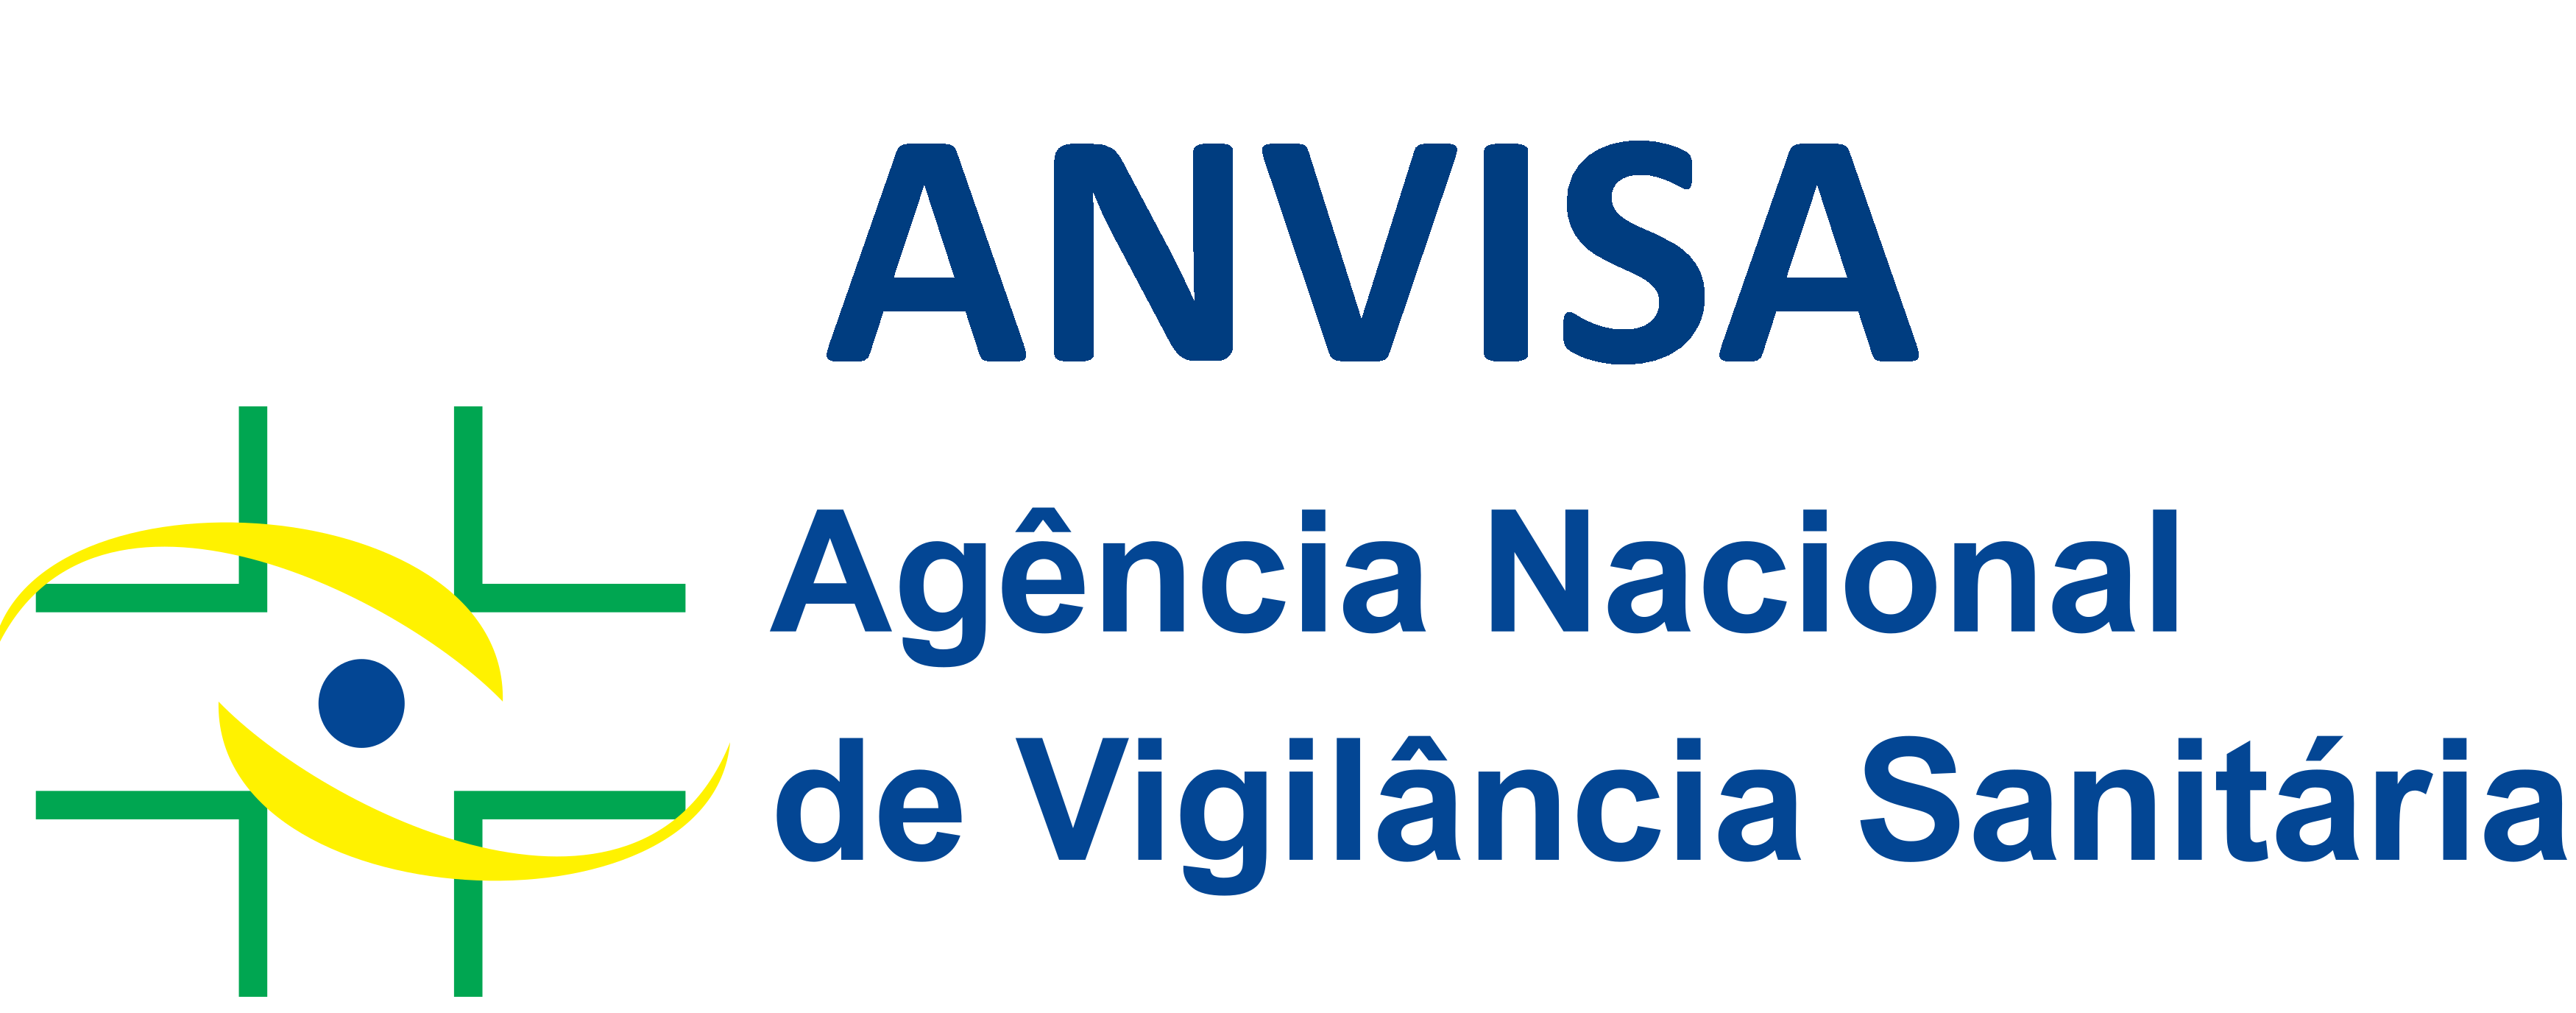 Anvisa-logo